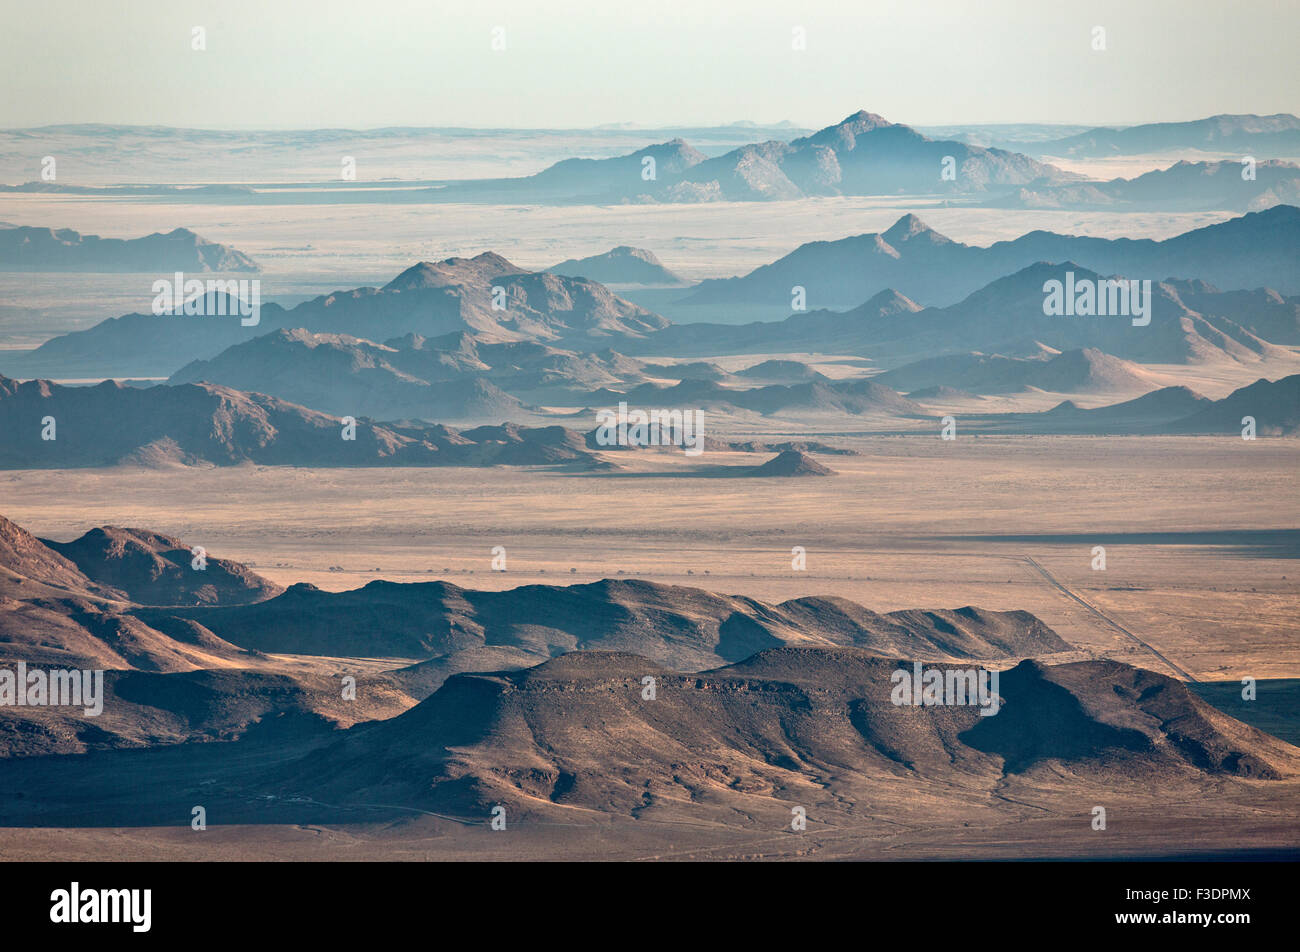 Vereinzelte Bergrücken am Rande der Namib-Wüste mit Küstennebel hinter, Luftaufnahme, NamibRand Nature Reserve, Namibia Stockfoto